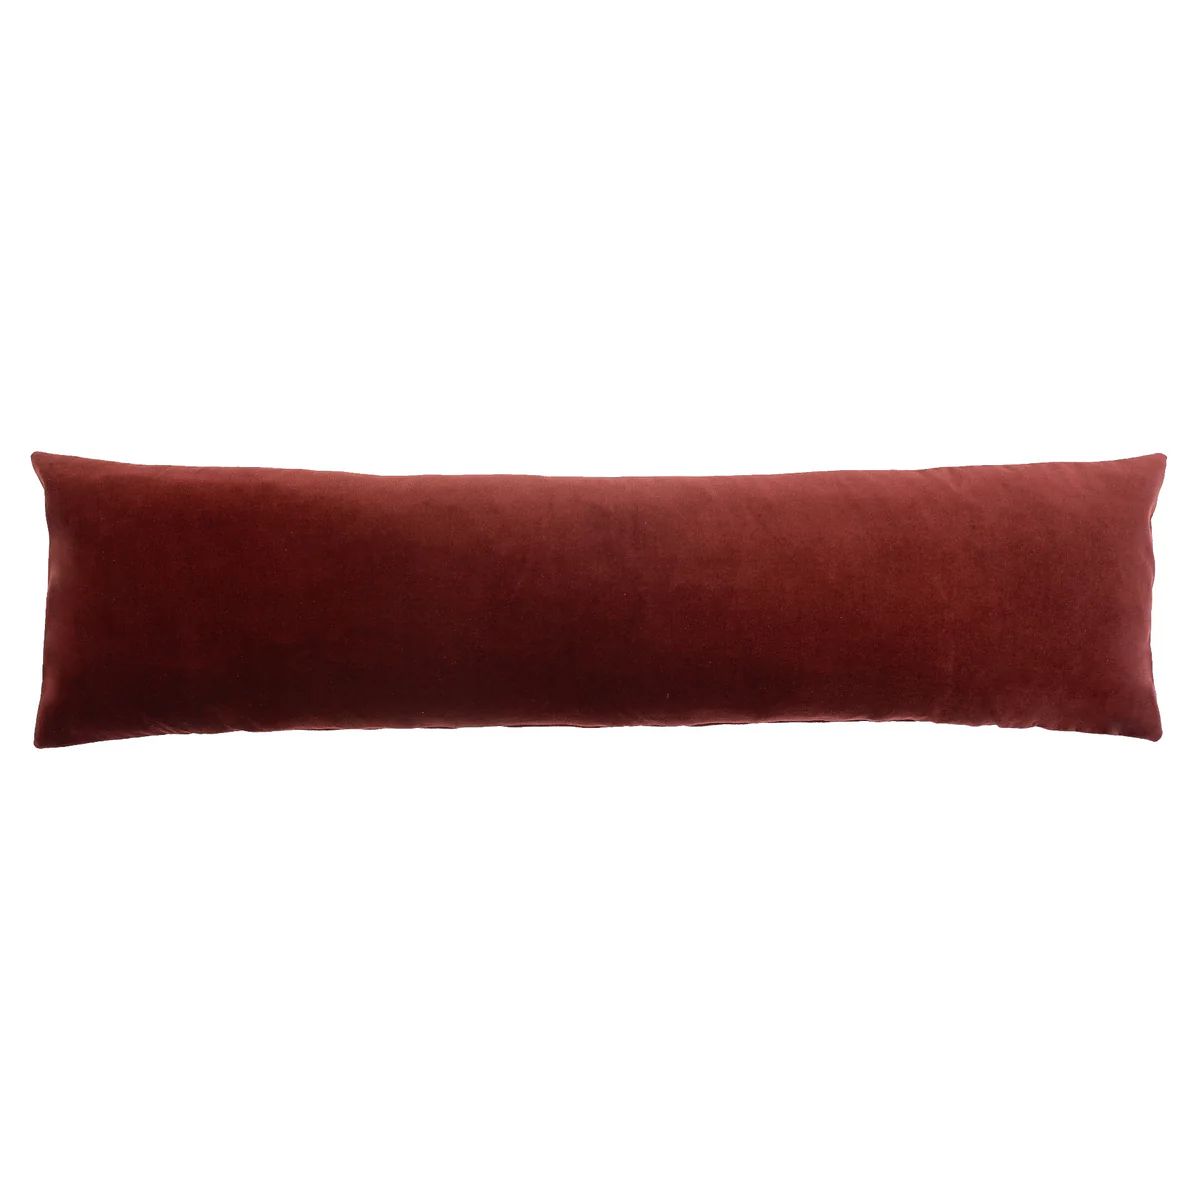 S|H Currant Velvet Lumbar Pillow Cover | Stoffer Home